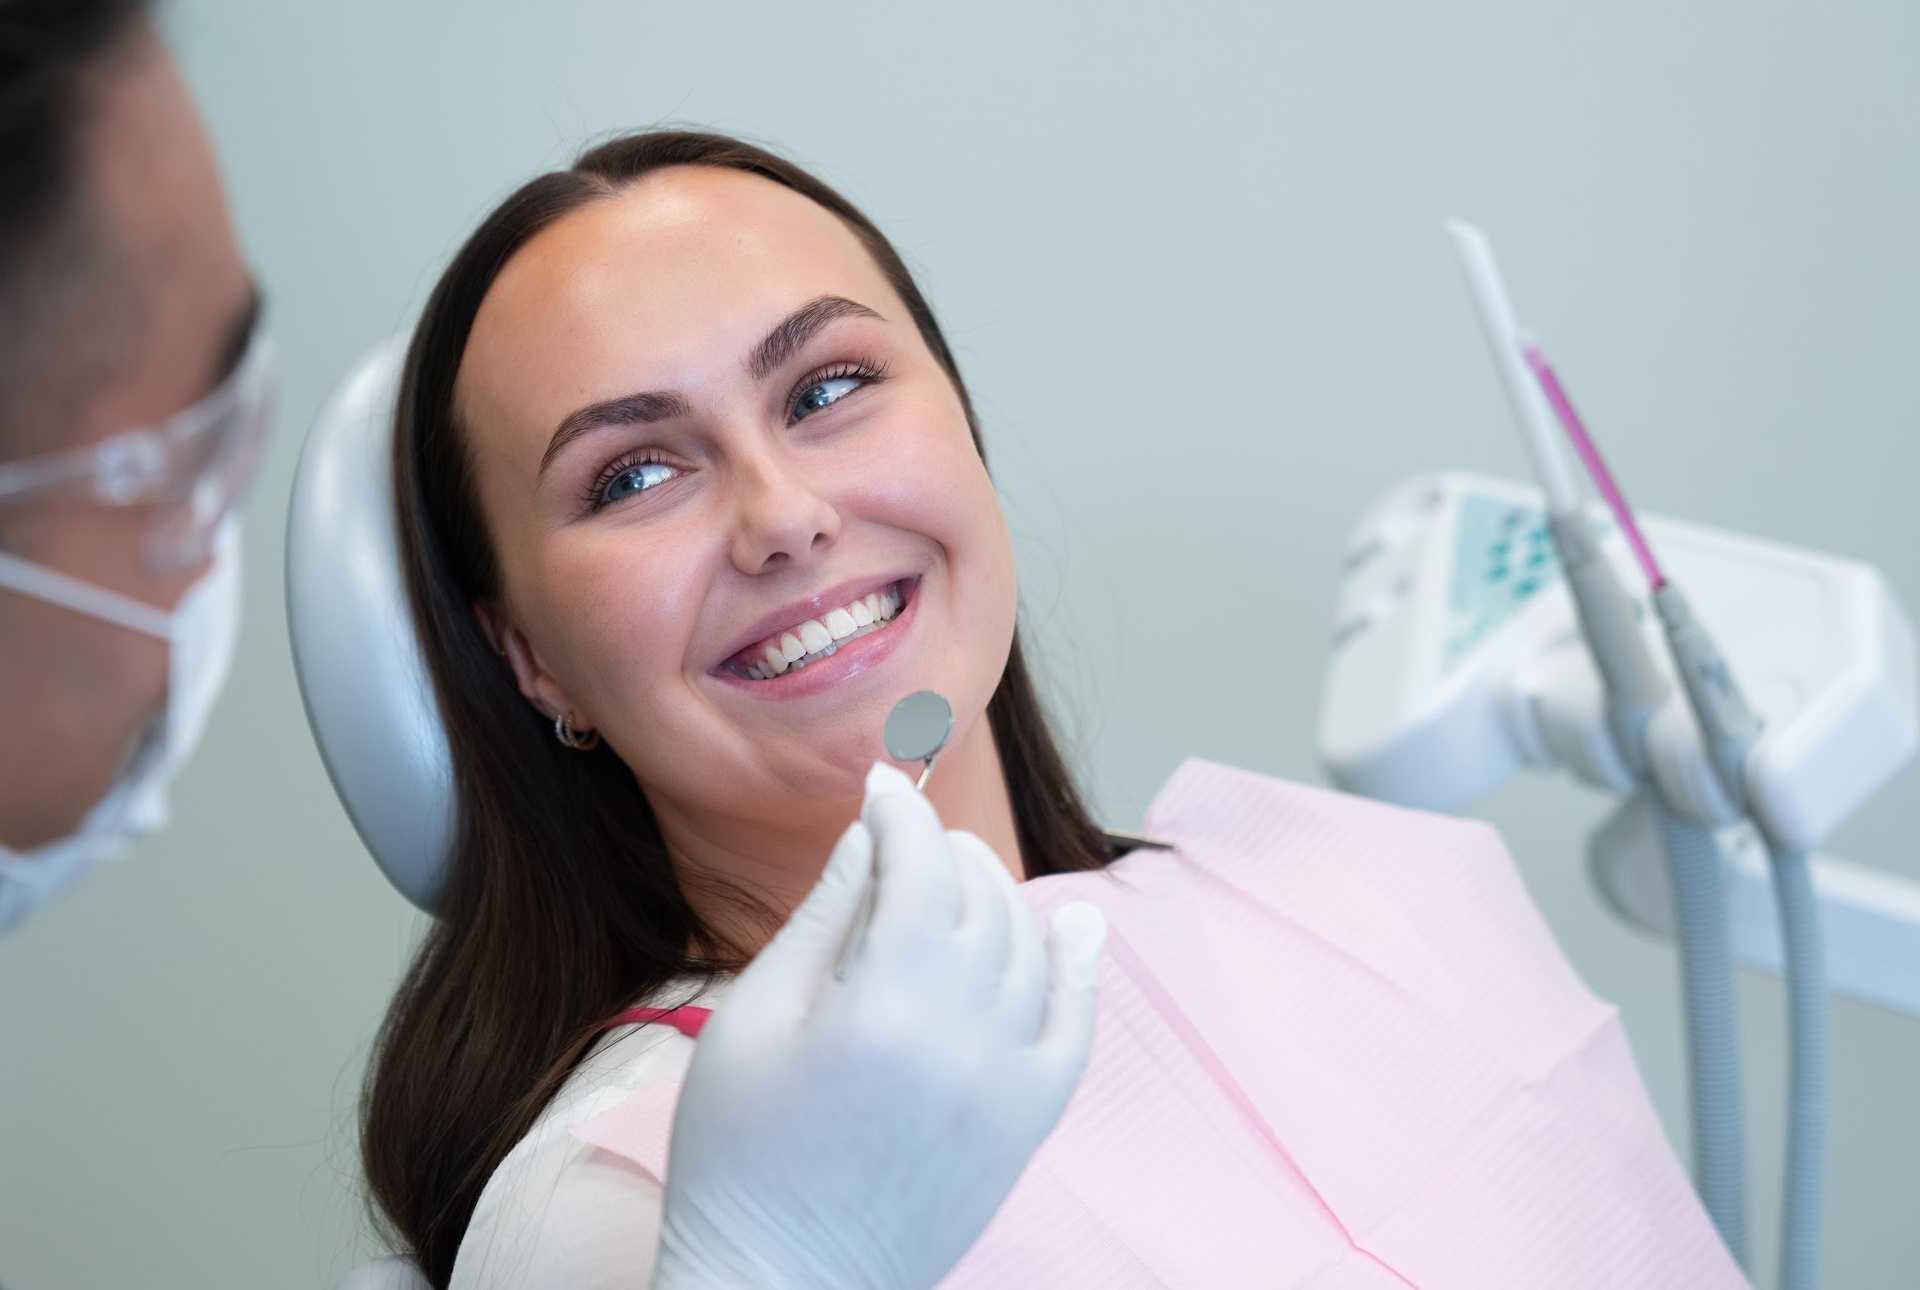 Tannsjekk hos tannlegen